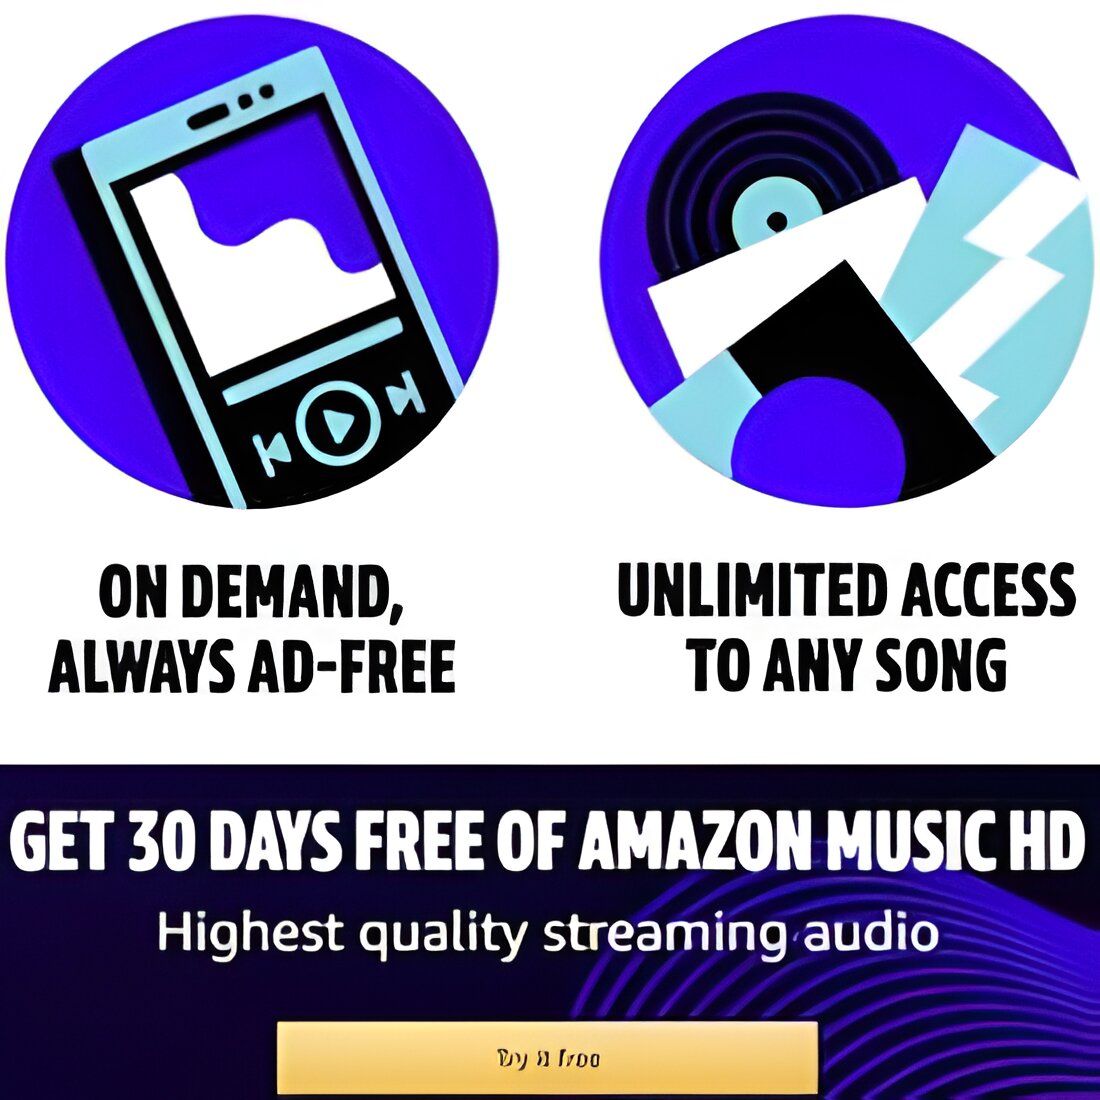 Free HD Music at Amazon